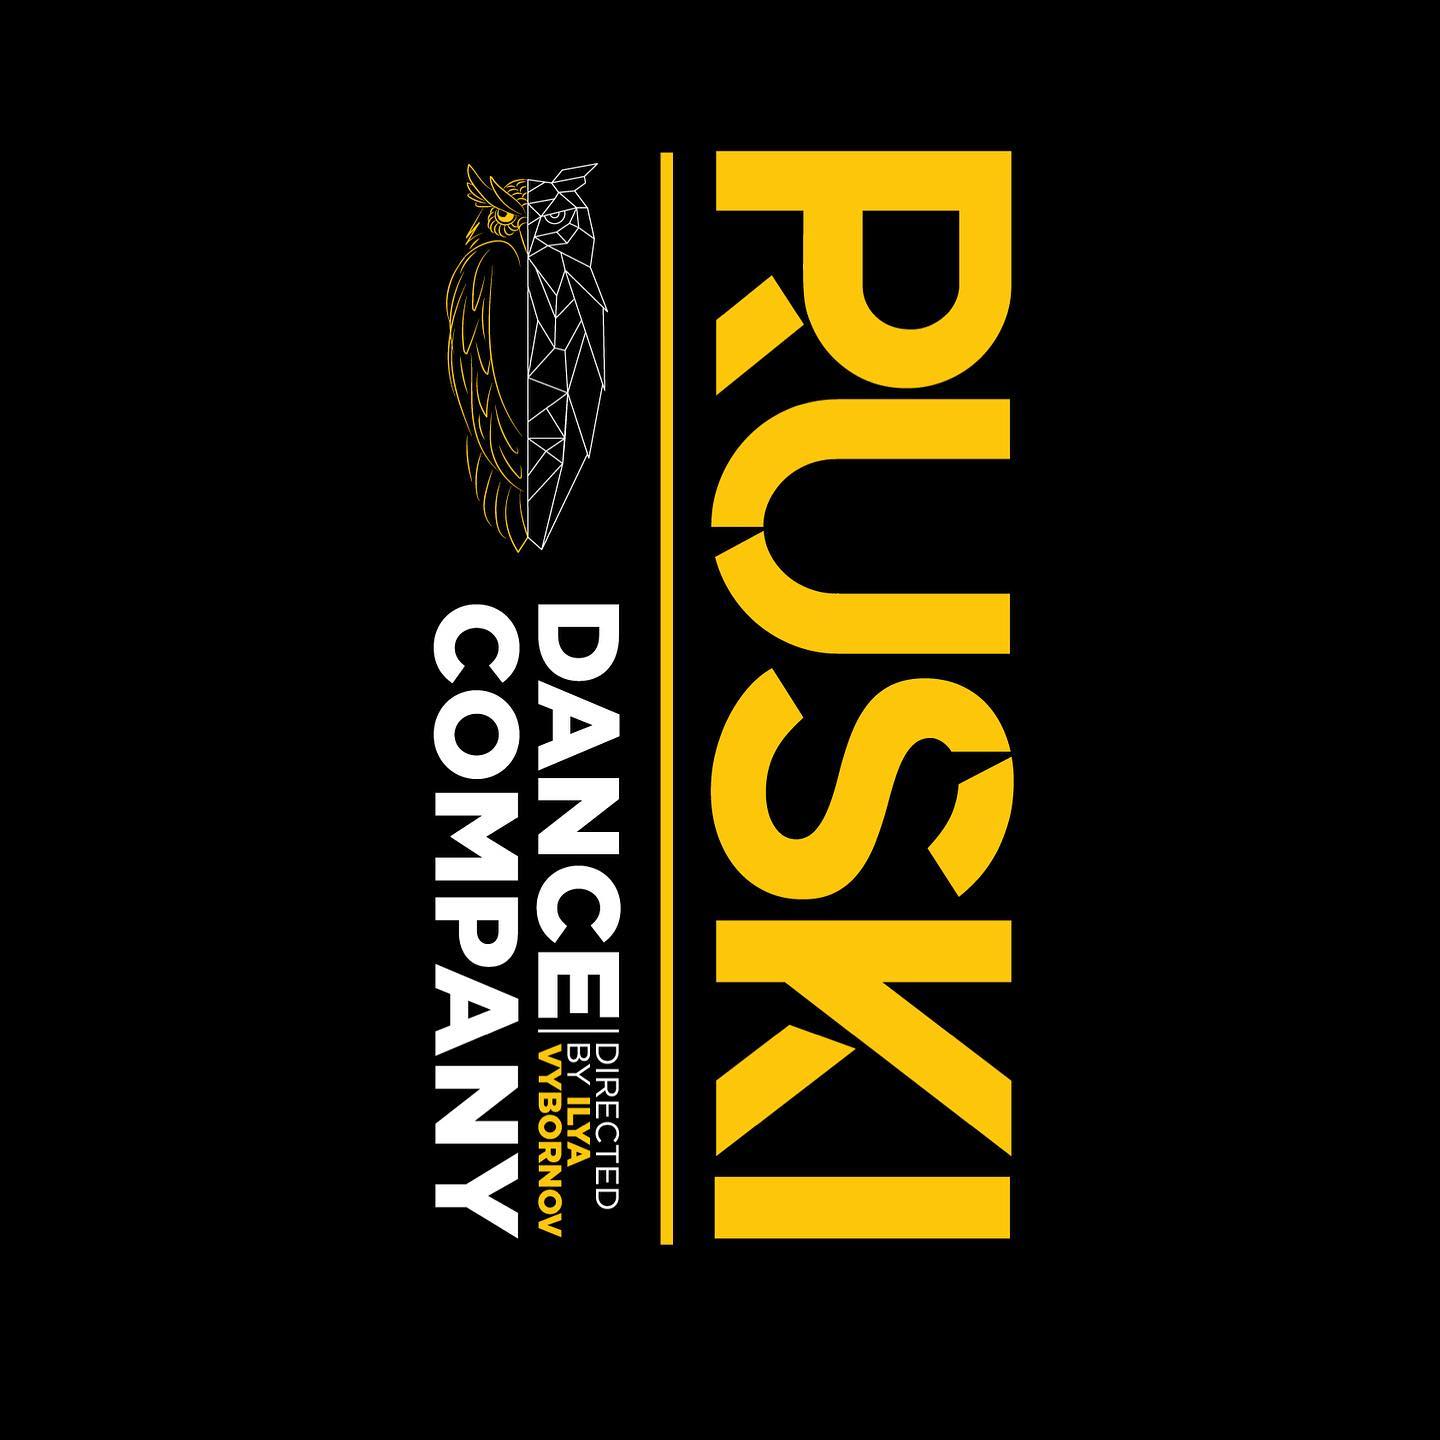 Ruski Dance Company logo